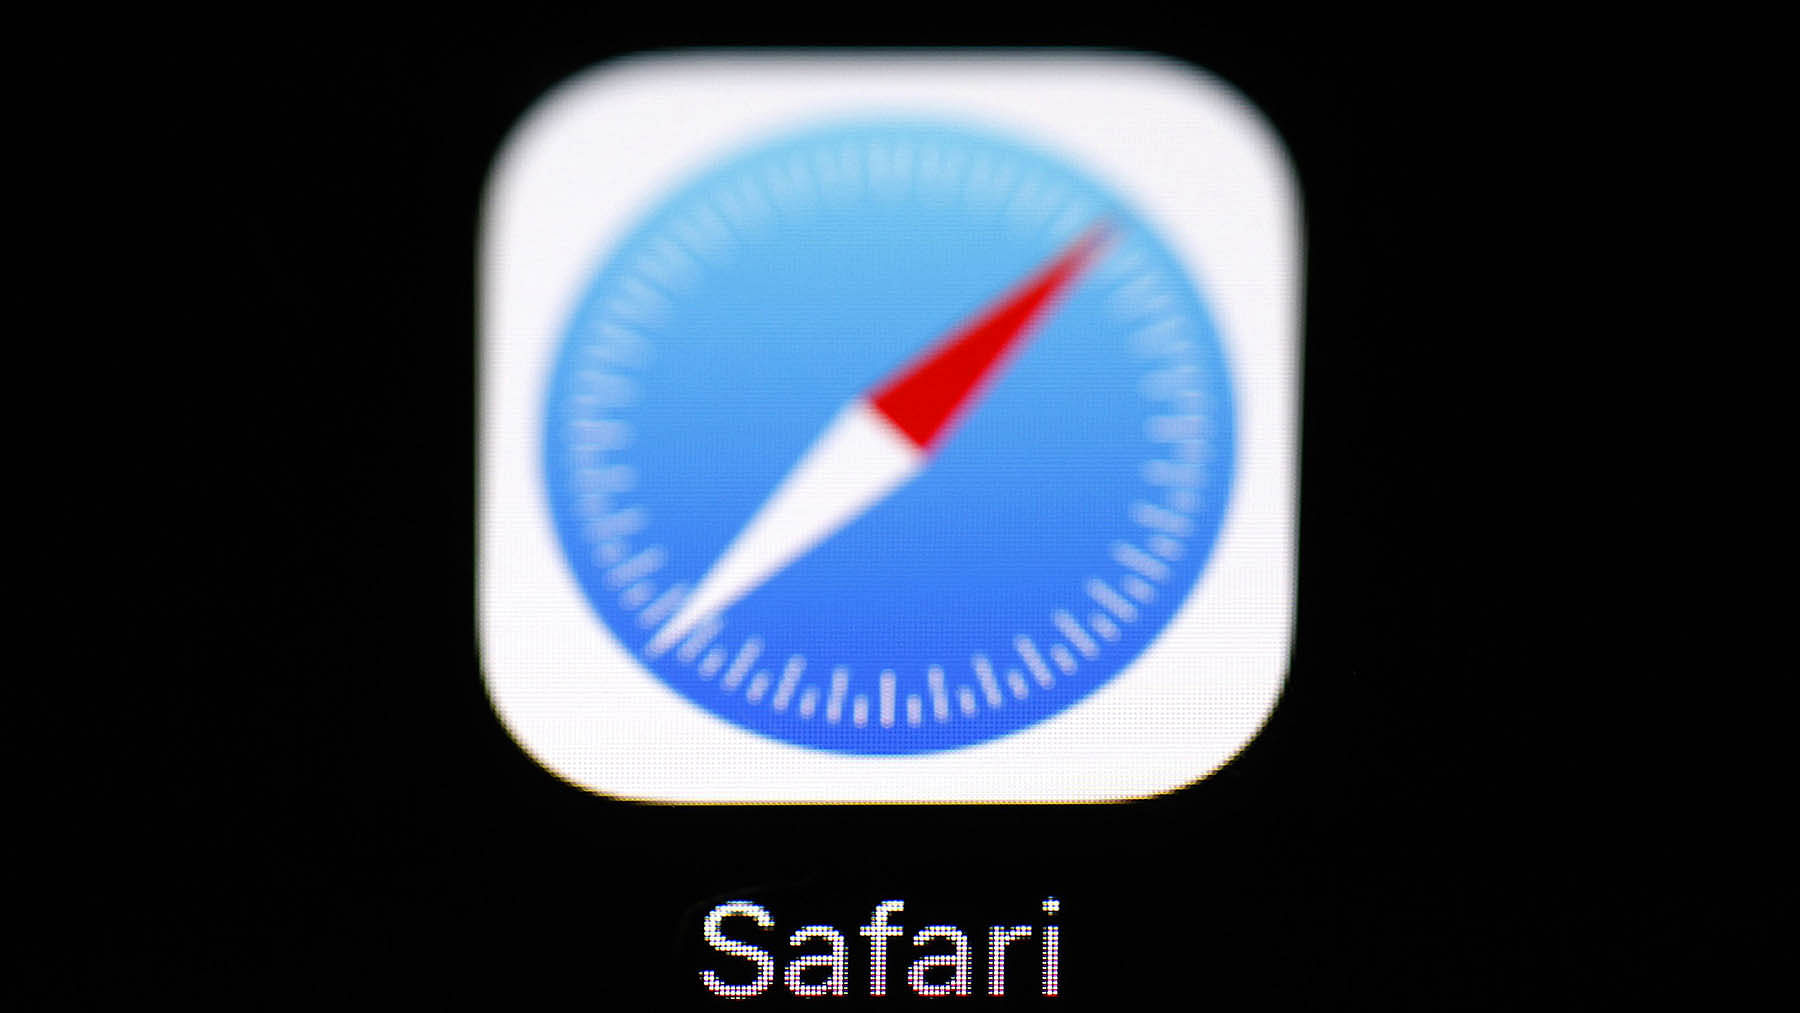 apple safari download for mac 10.6.8